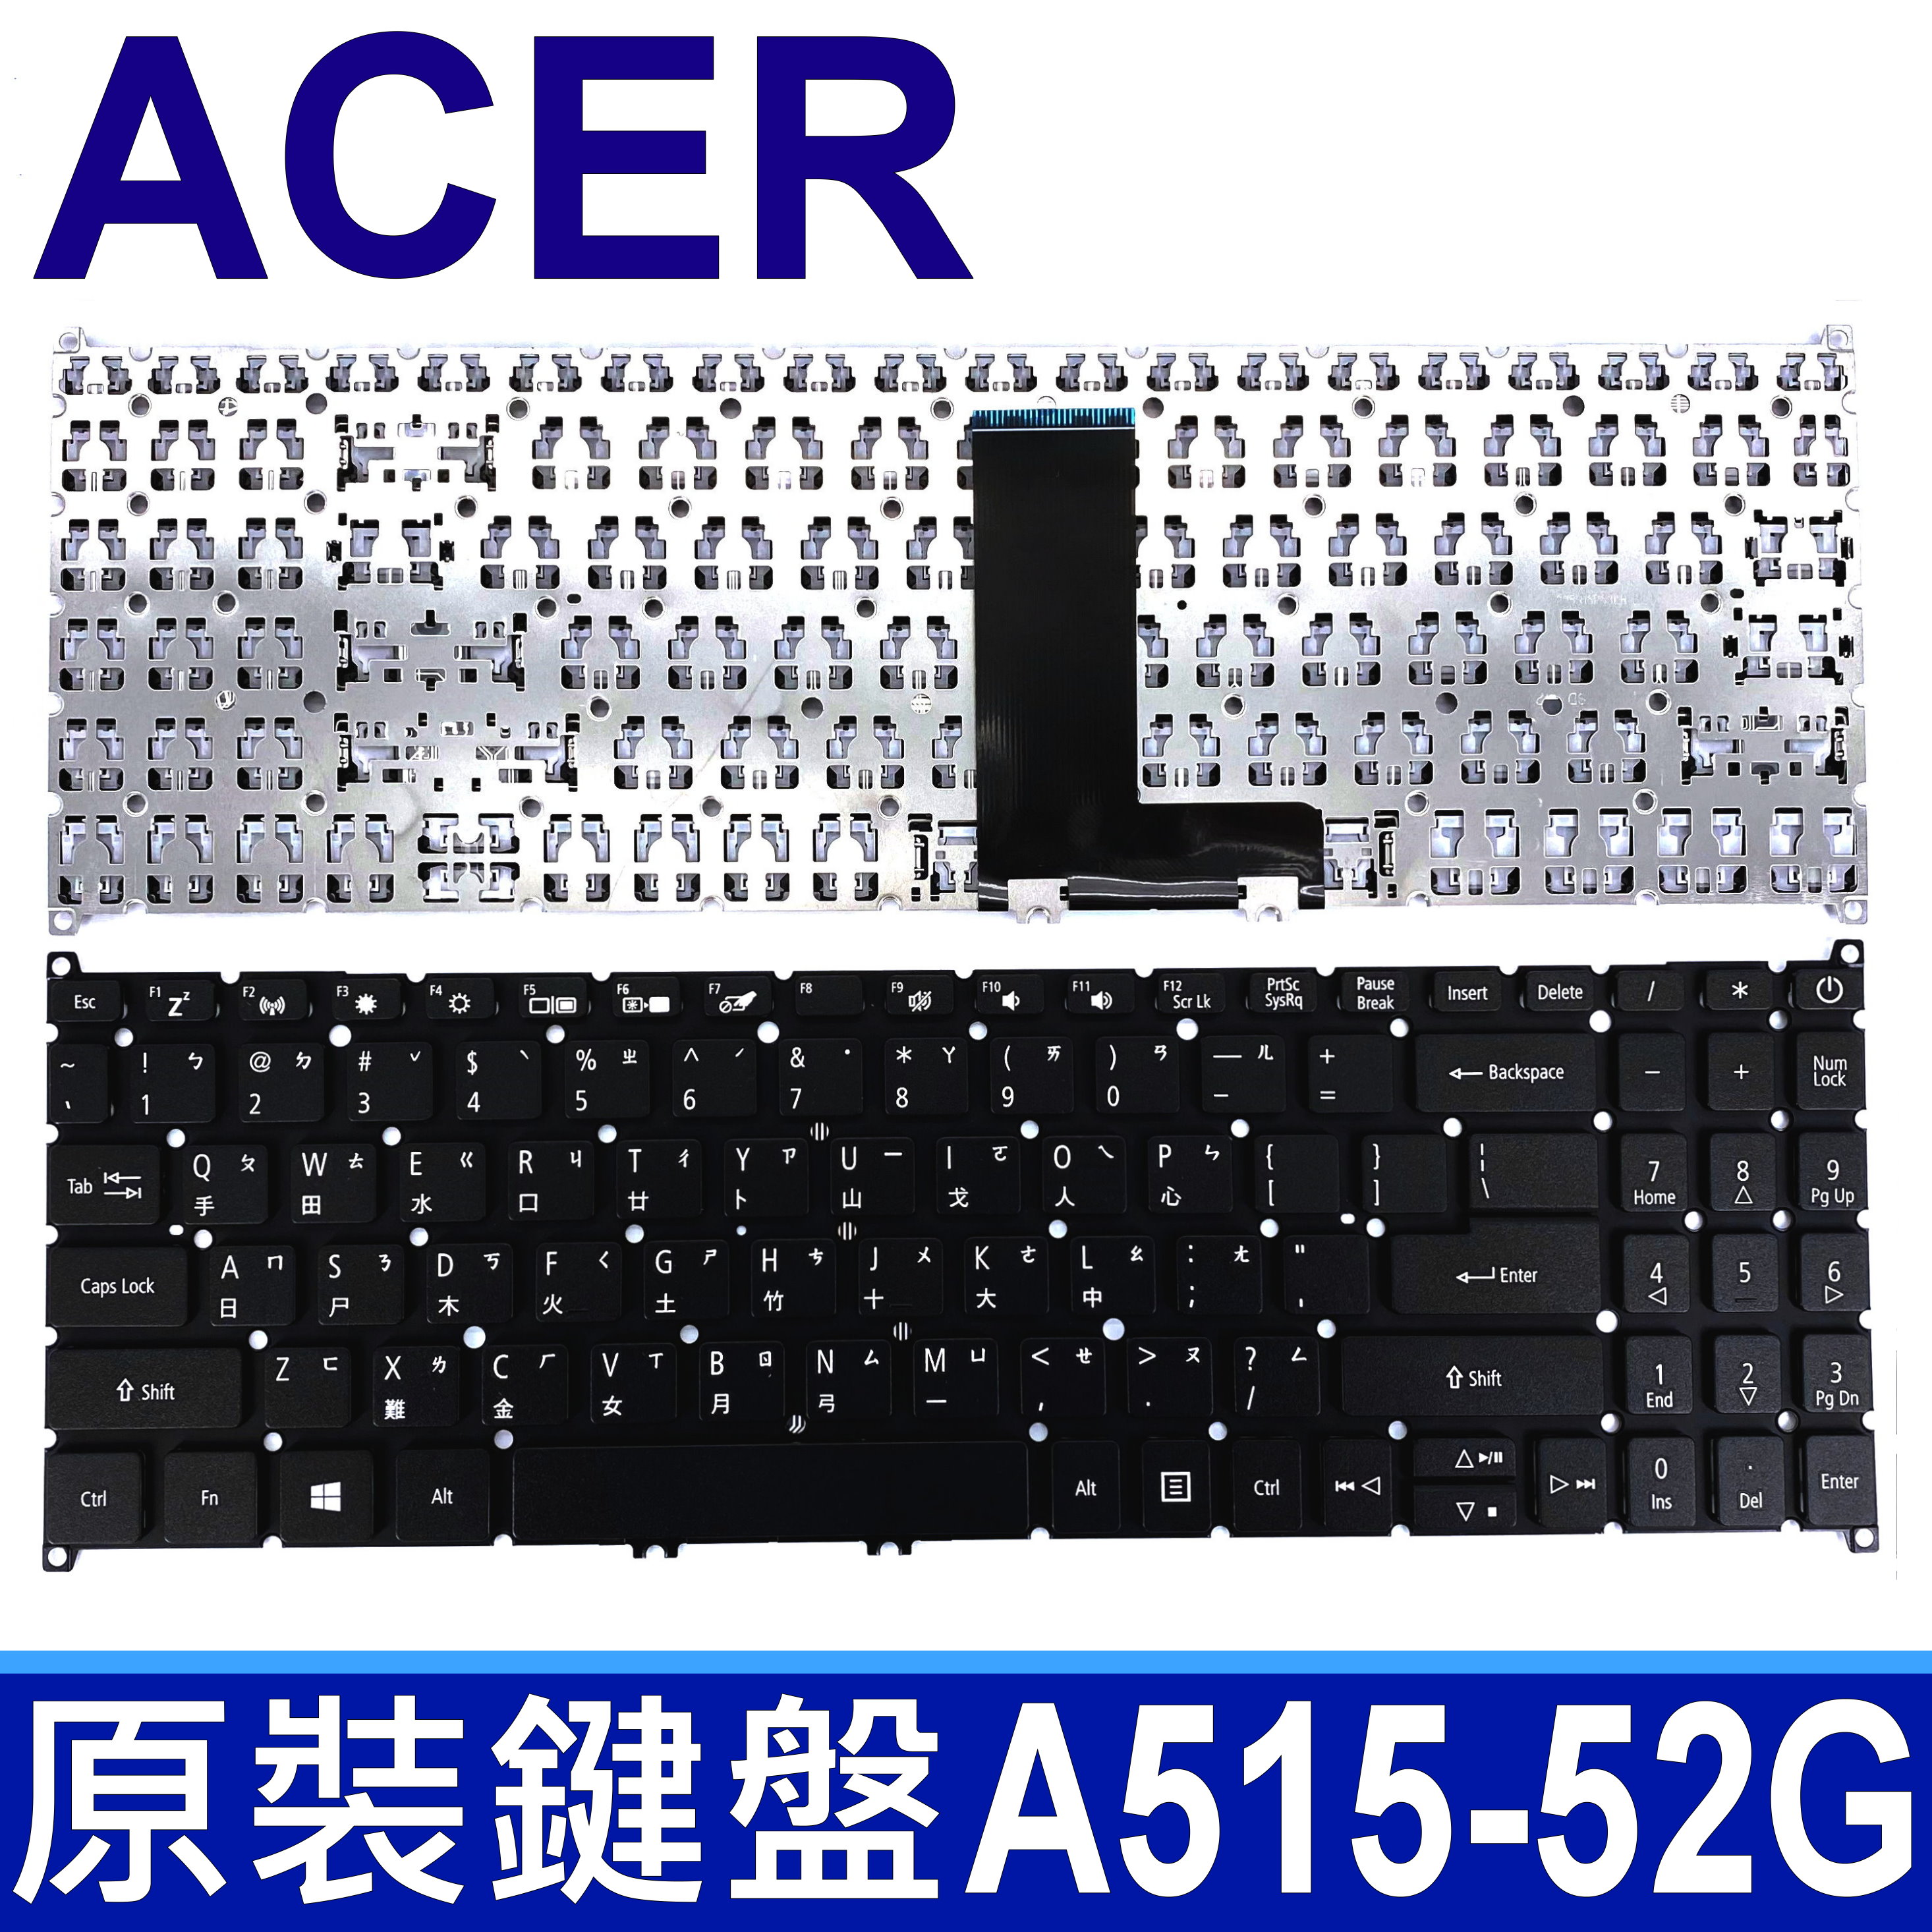 ACER A515-52G 繁體中文 筆電 鍵盤 A515-52 A515-52G 系列